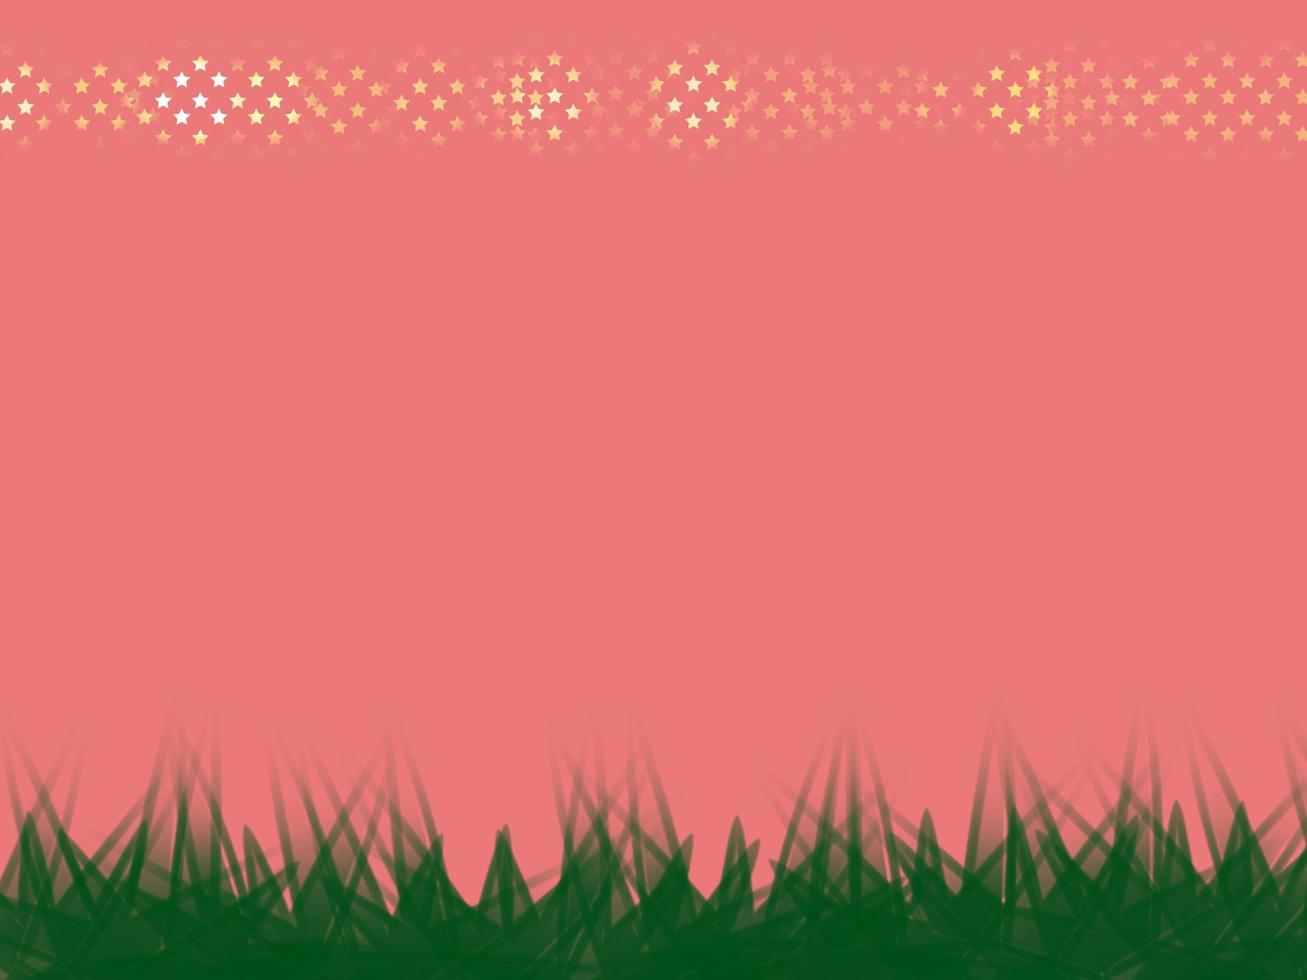 hierba dibujada a mano en el campo contra el cielo por la mañana con cielo rosa, vector